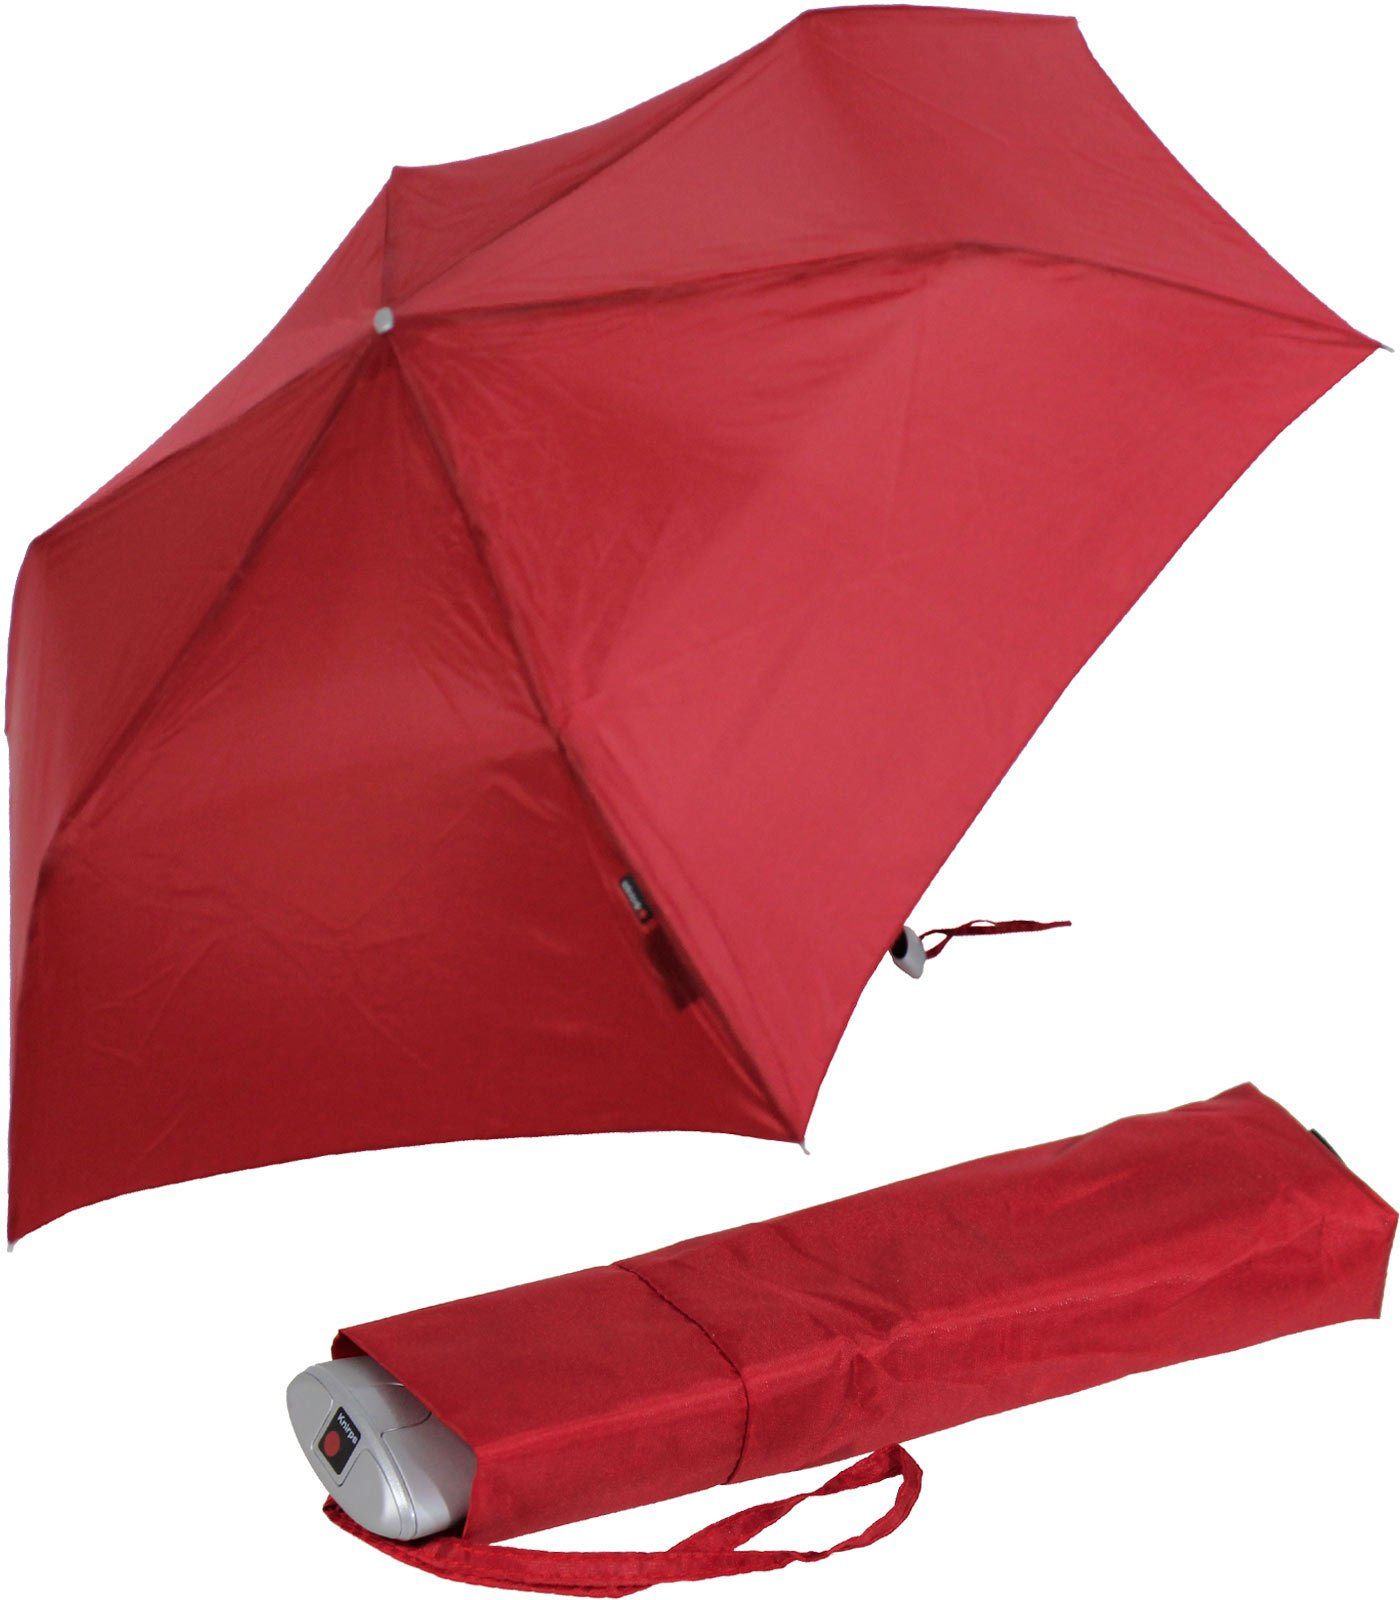 Knirps® Taschenregenschirm flacher, stabiler Schirm, passend für jede Tasche, ein treuer Begleiter, für jeden Notfall rot